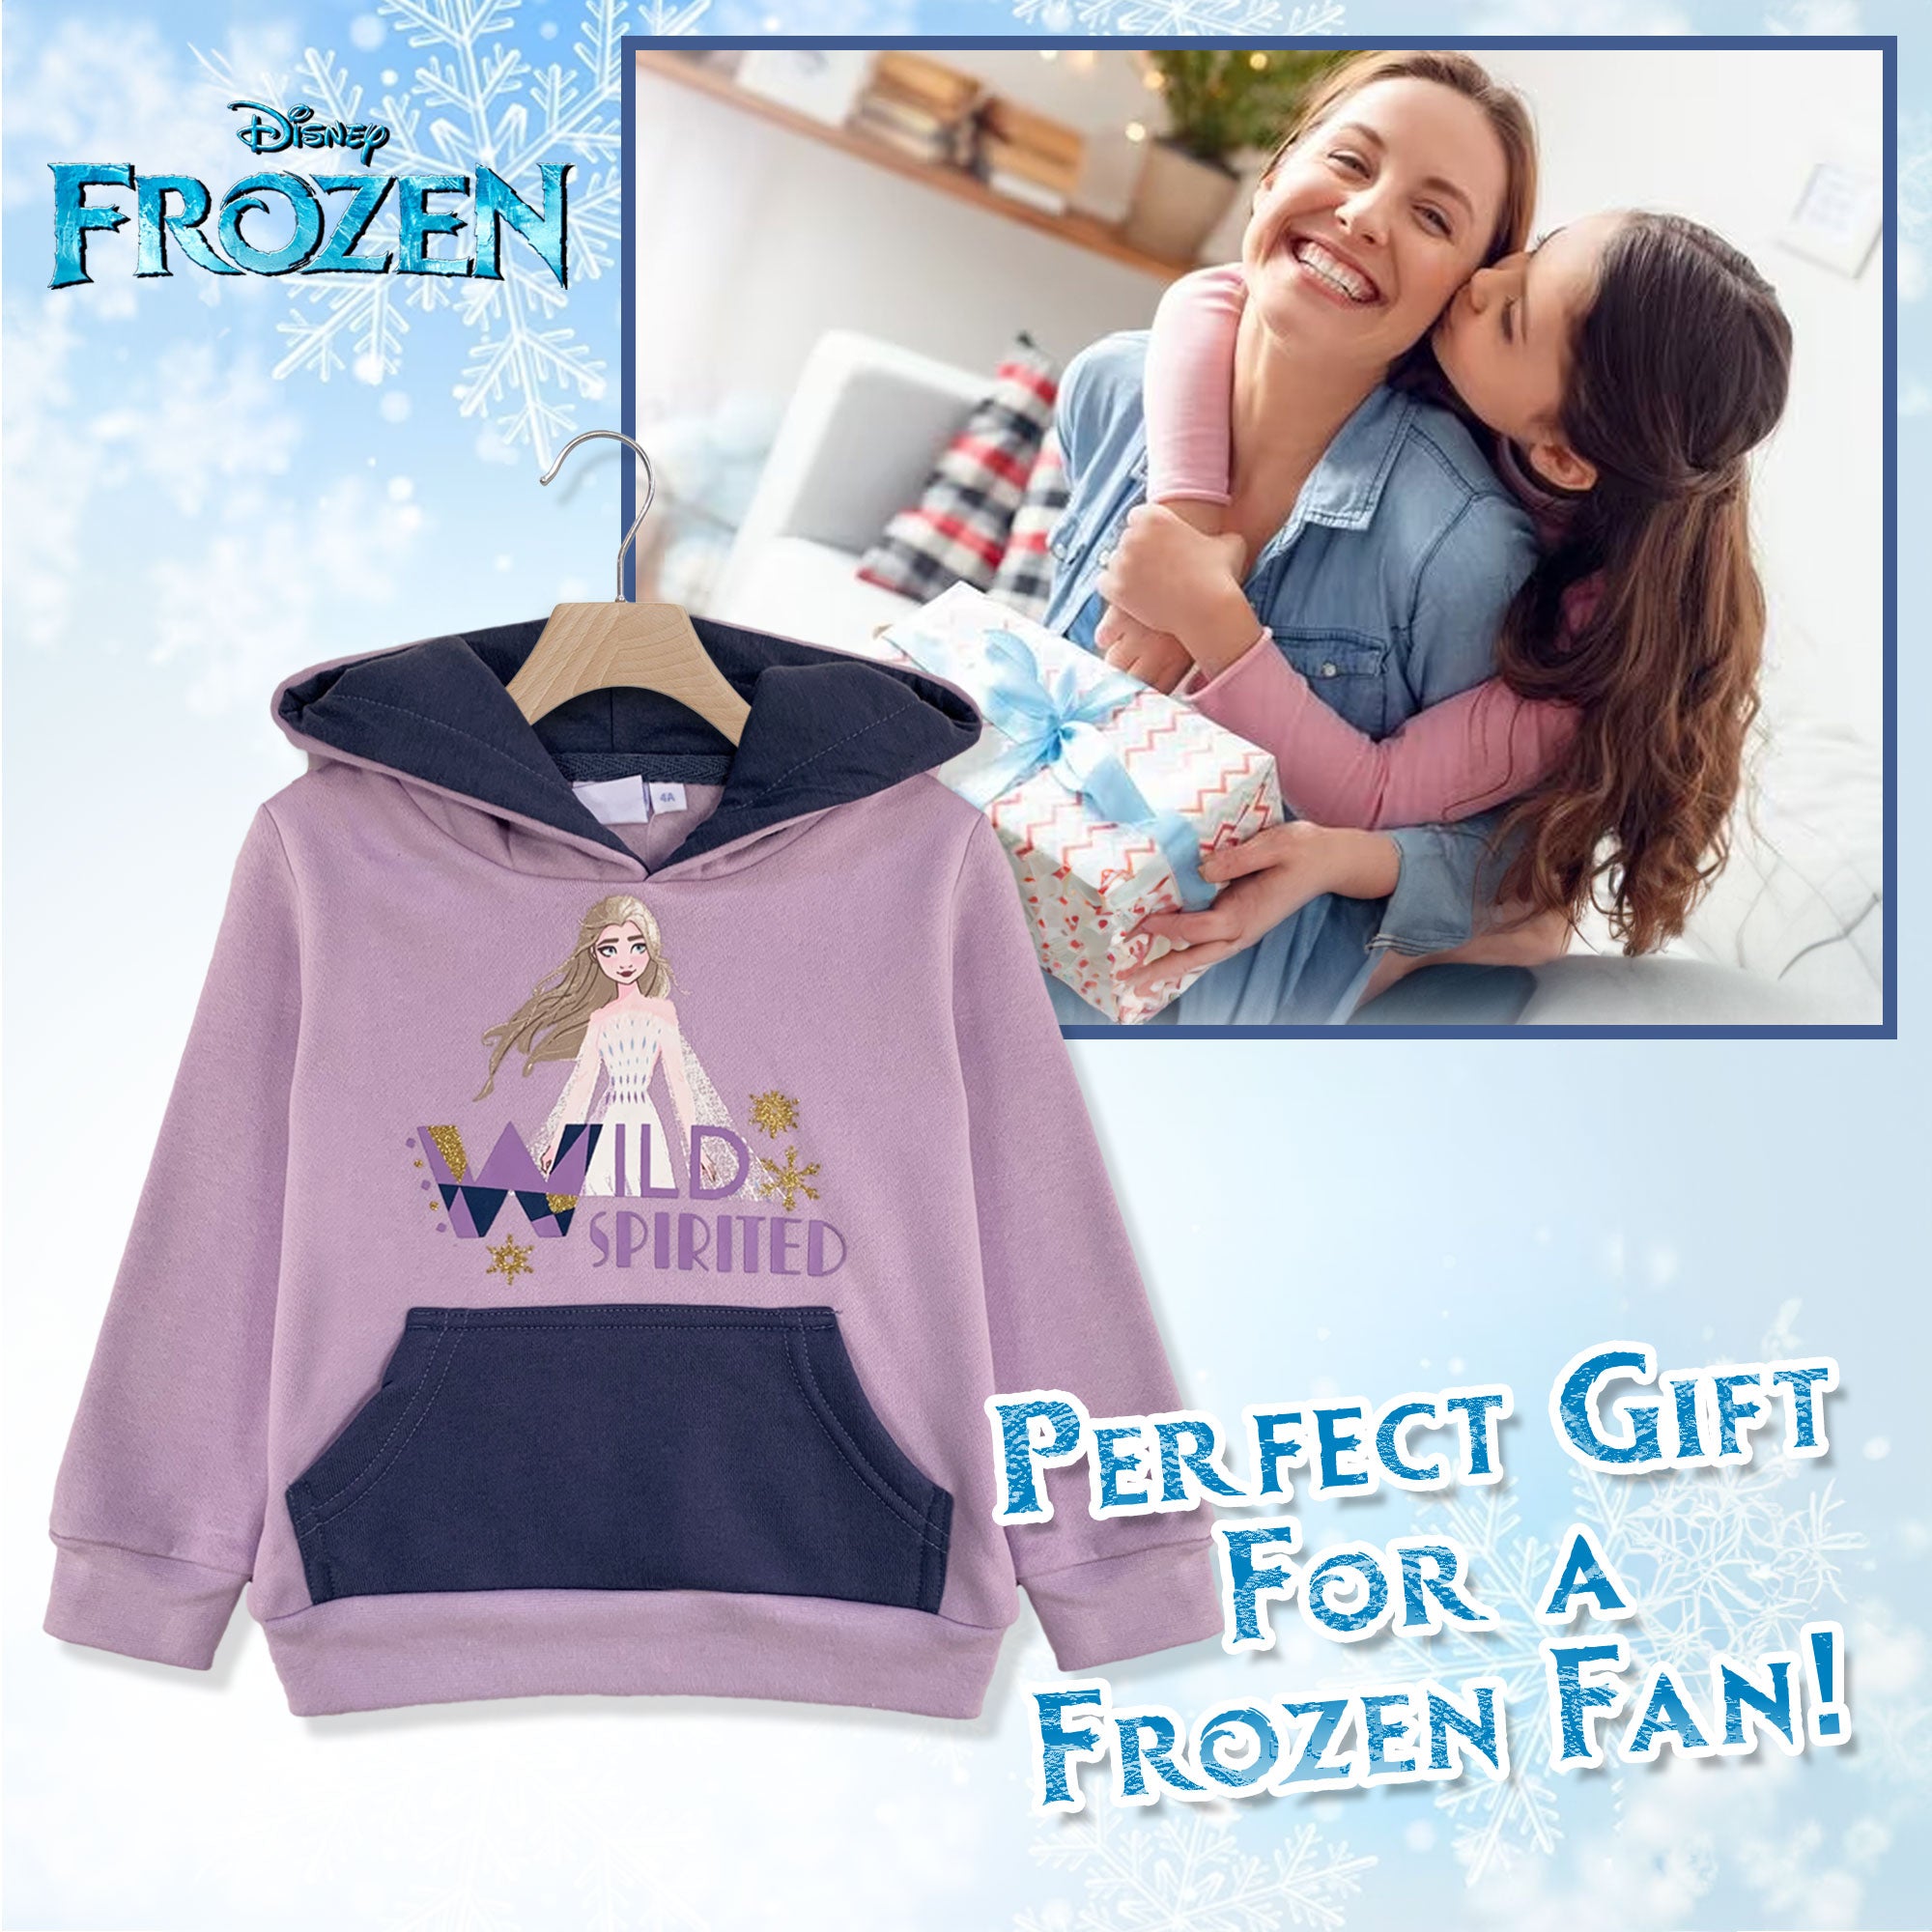 Felpa Disney Frozen Elsa per bambina con cappuccio a maniche lunghe bimba 6263